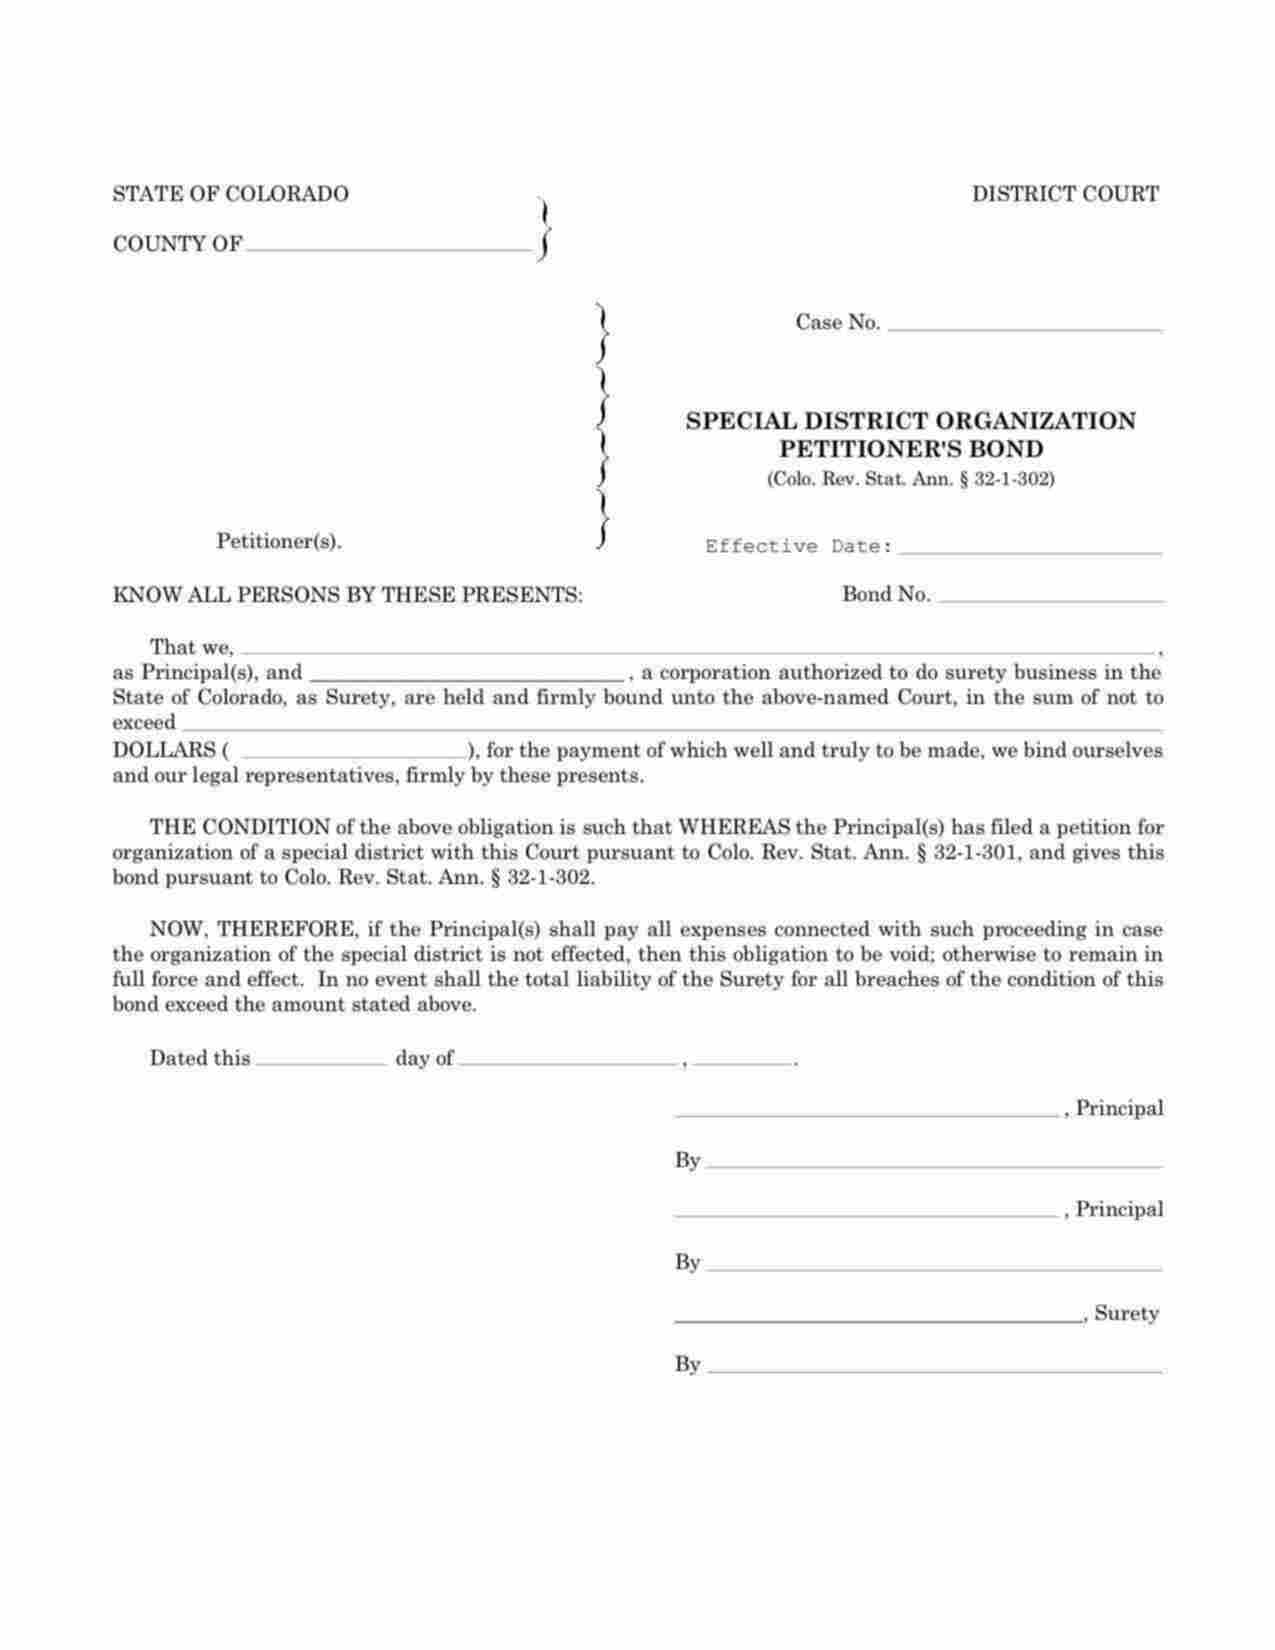 Colorado Special District Organization Petitioner Bond Form